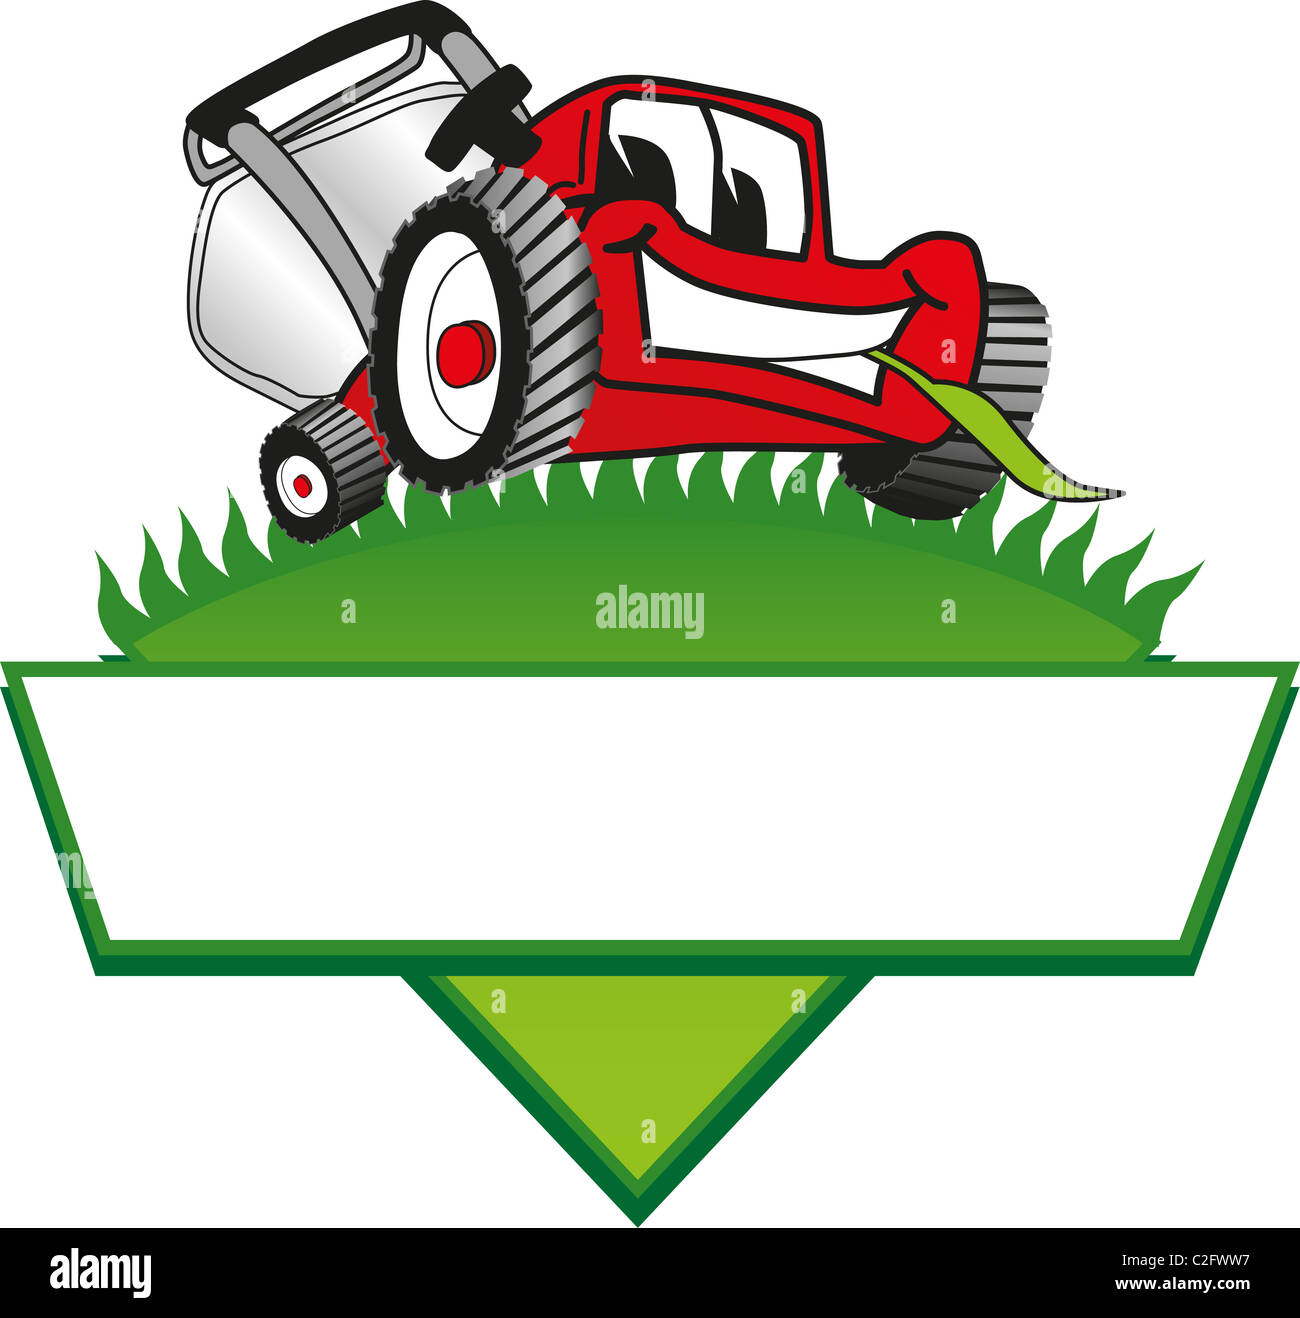 free cartoon lawn mower clipart - photo #14